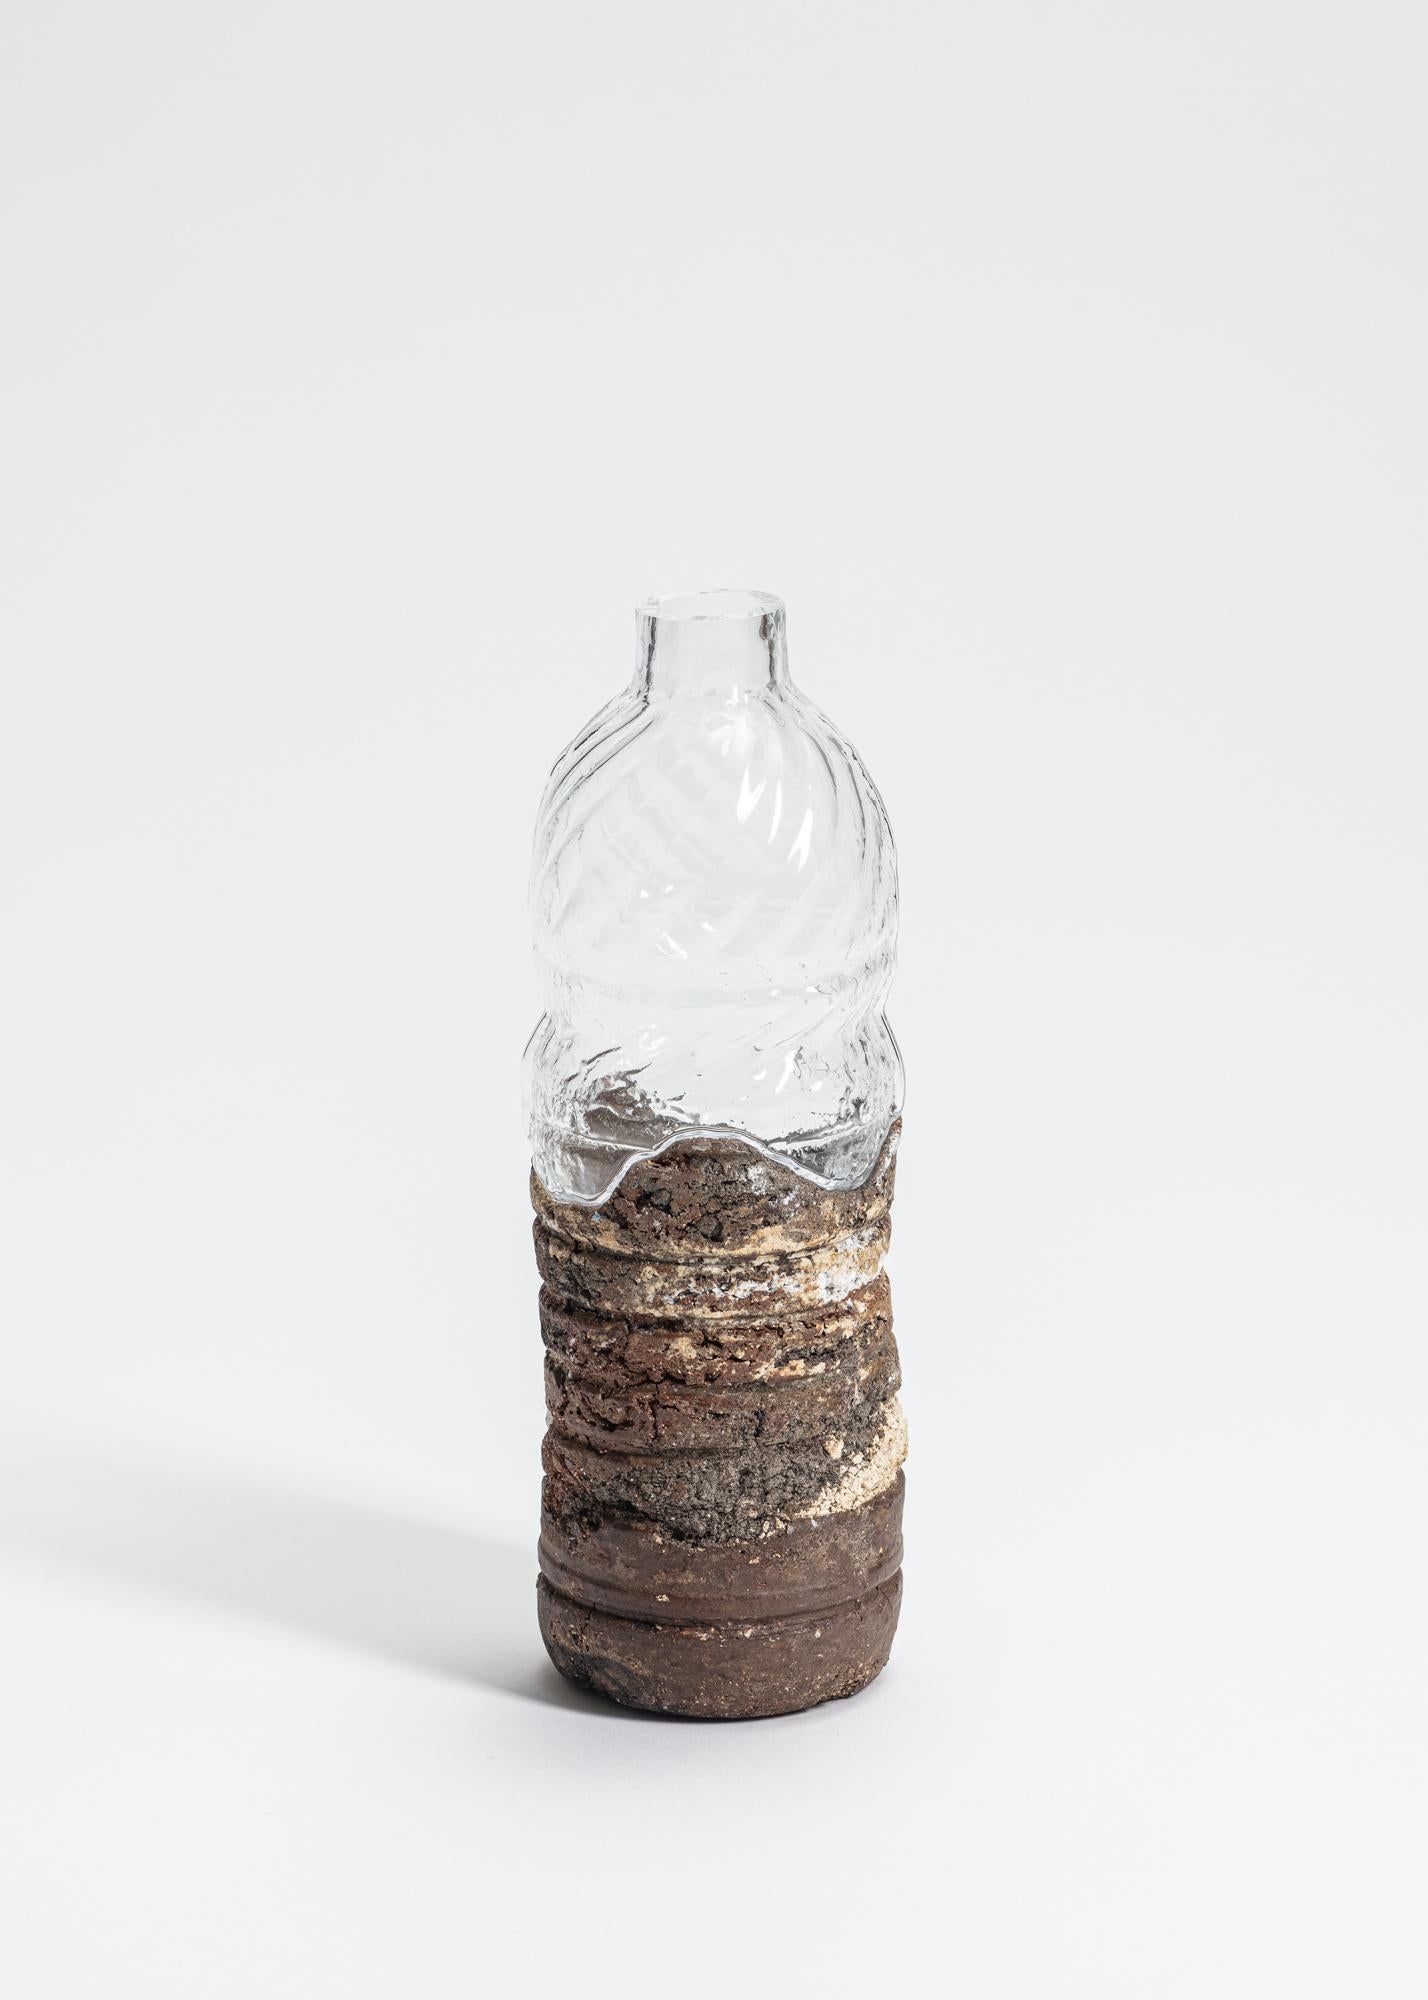 FUWA FUWA, Nr. 16 Flasche von Yusuke' Y. Offhause
Das Werk ist ein Unikat und besteht aus zwei Teilen (Keramik und Glas).
Abmessungen: D 8 x B 8 x H 23 cm.
MATERIAL: Steingut, Porzellan, Glas.

Yusuke' Y. Offhause:
